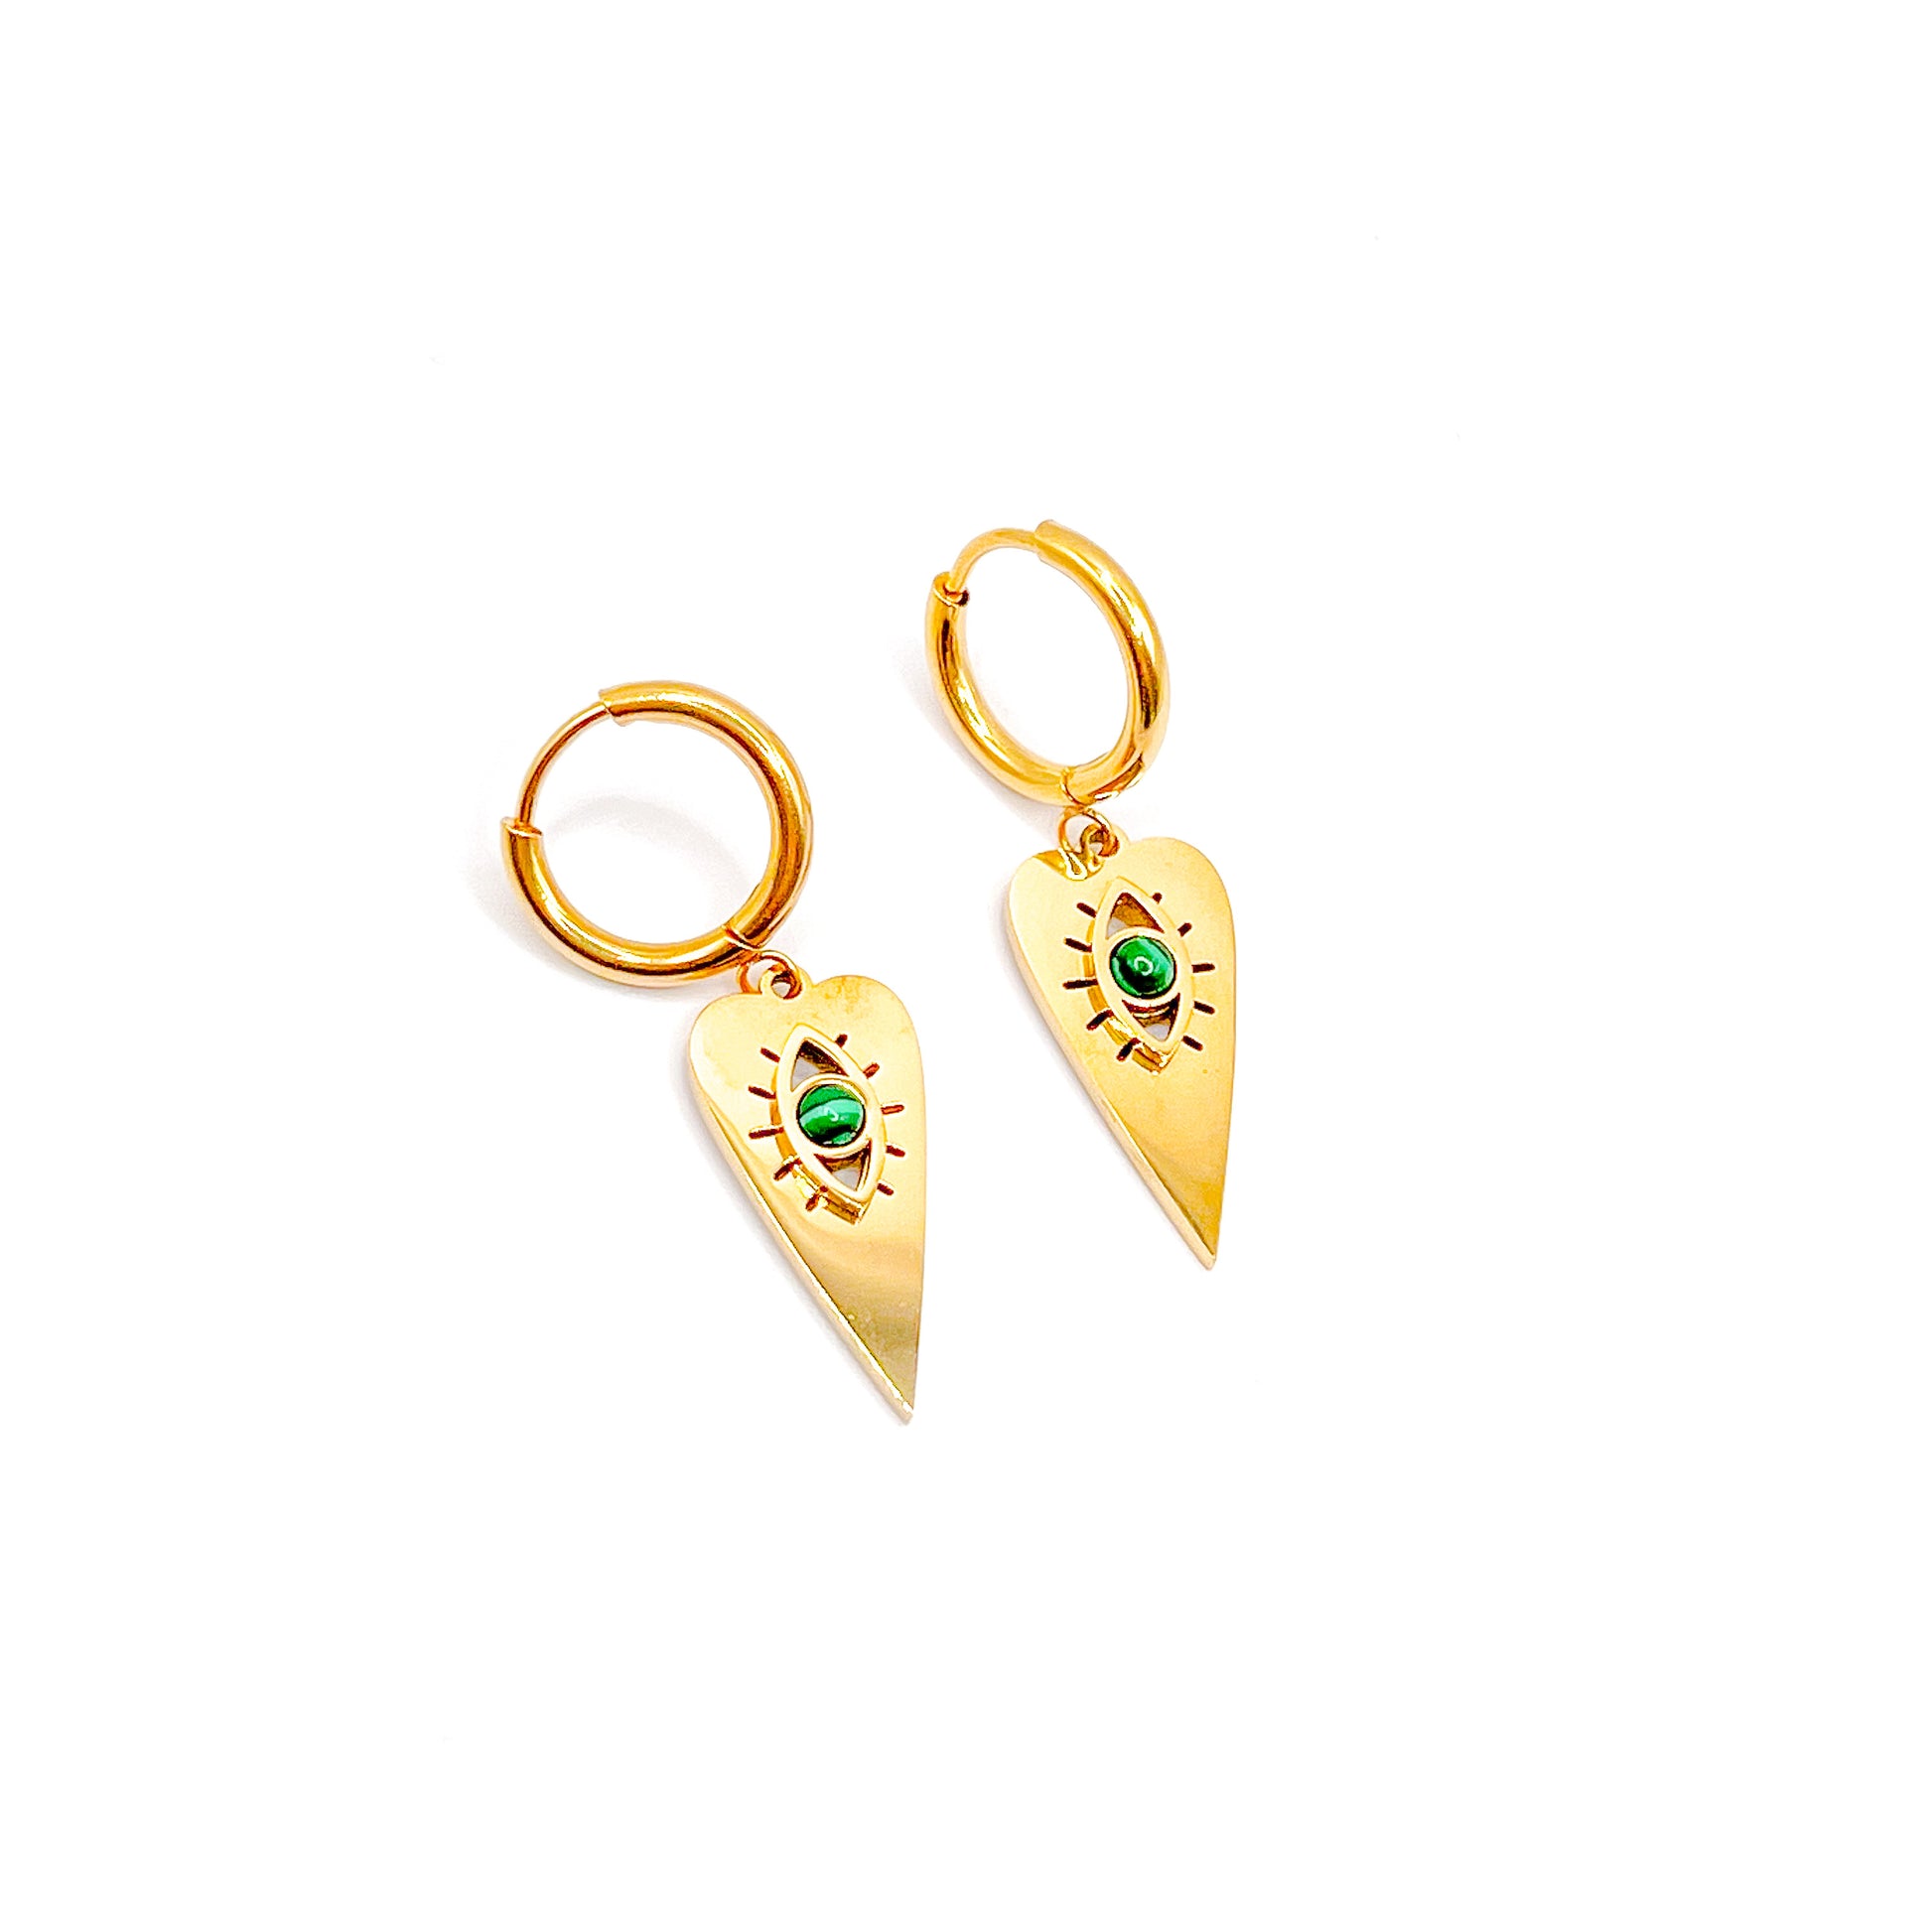 Heart earrings in gold - Alaia